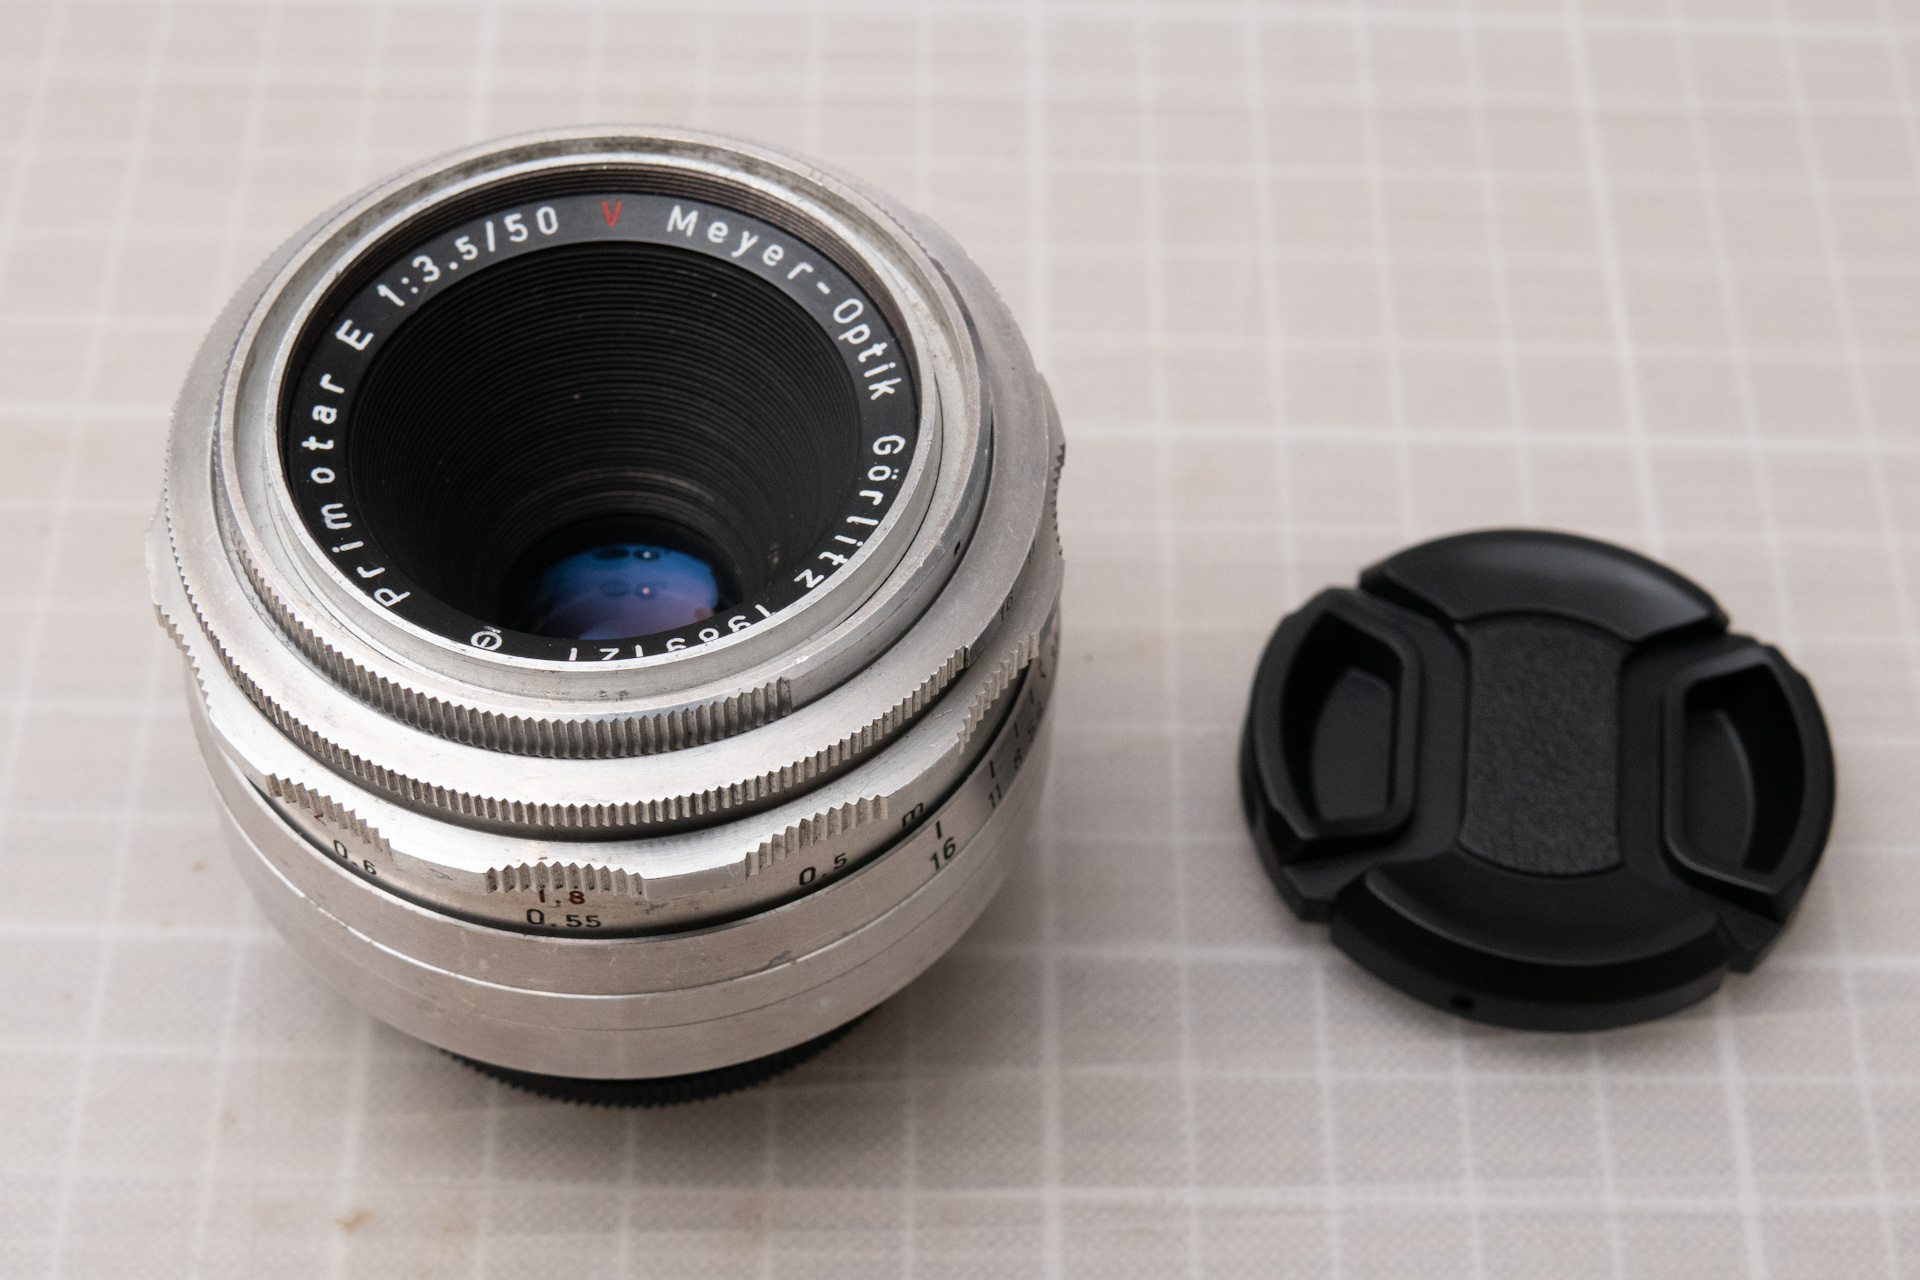 Meyer-Optik Primotar 50mm F3.5 の作例紹介 | Baryanのおすすめ 